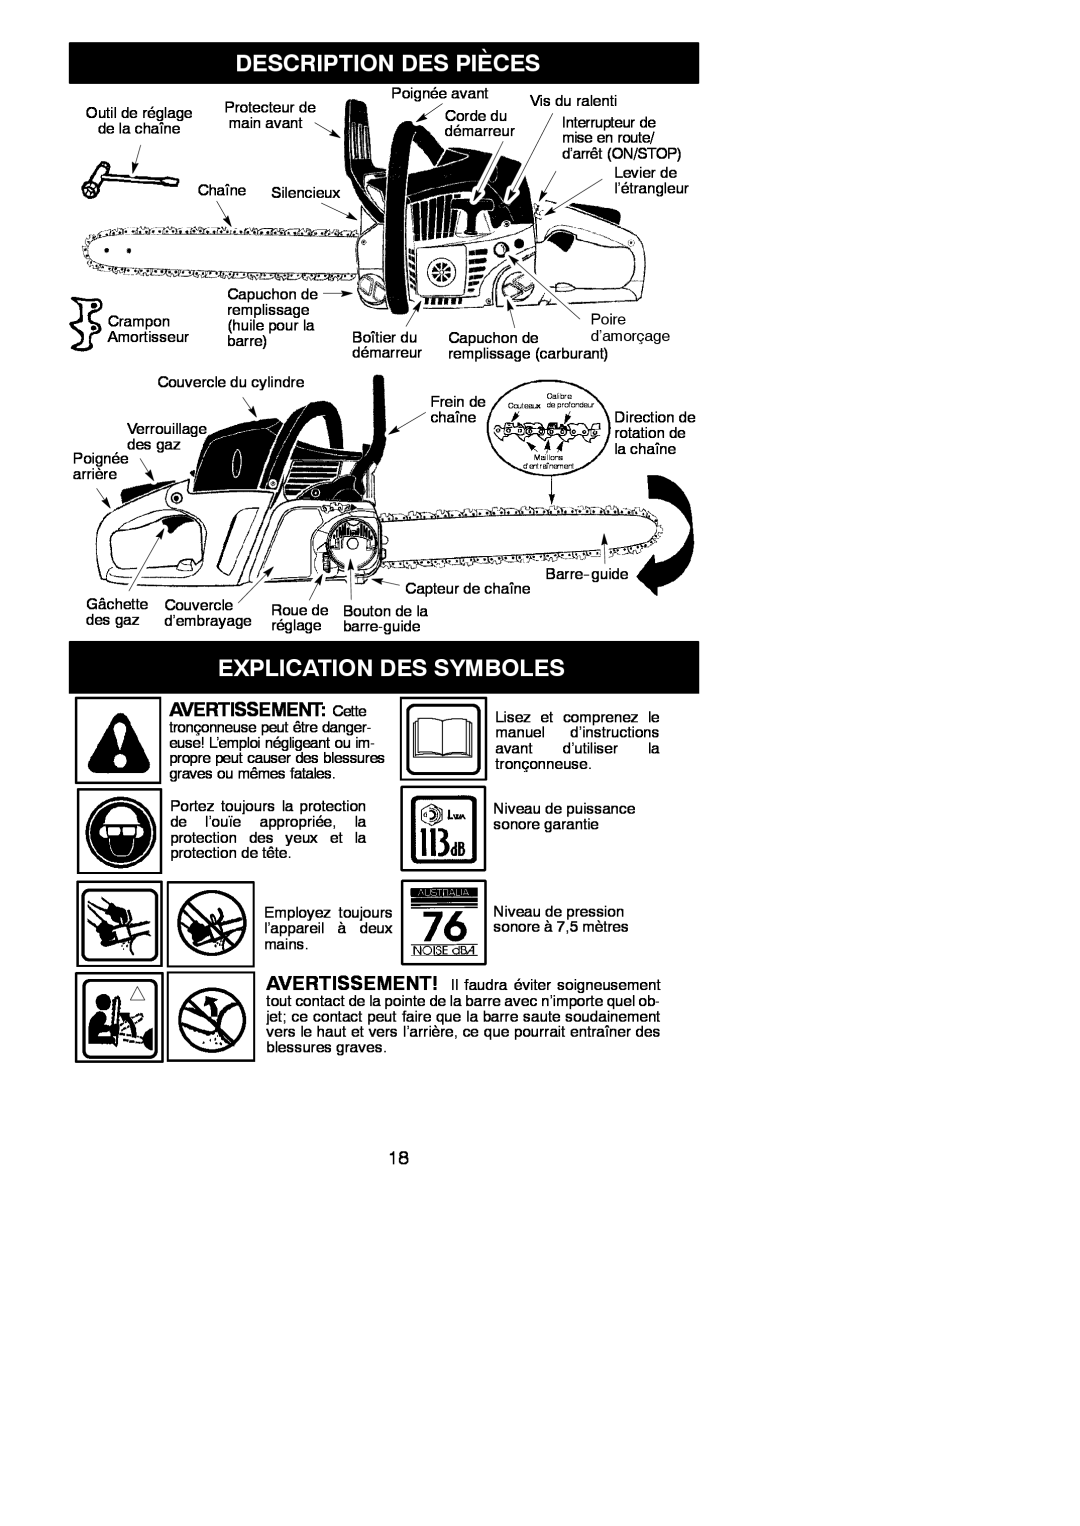 McCulloch MAC 842 instruction manual Description Des Pièces, Explication Des Symboles, AVERTISSEMENT Cette, Avertissement 